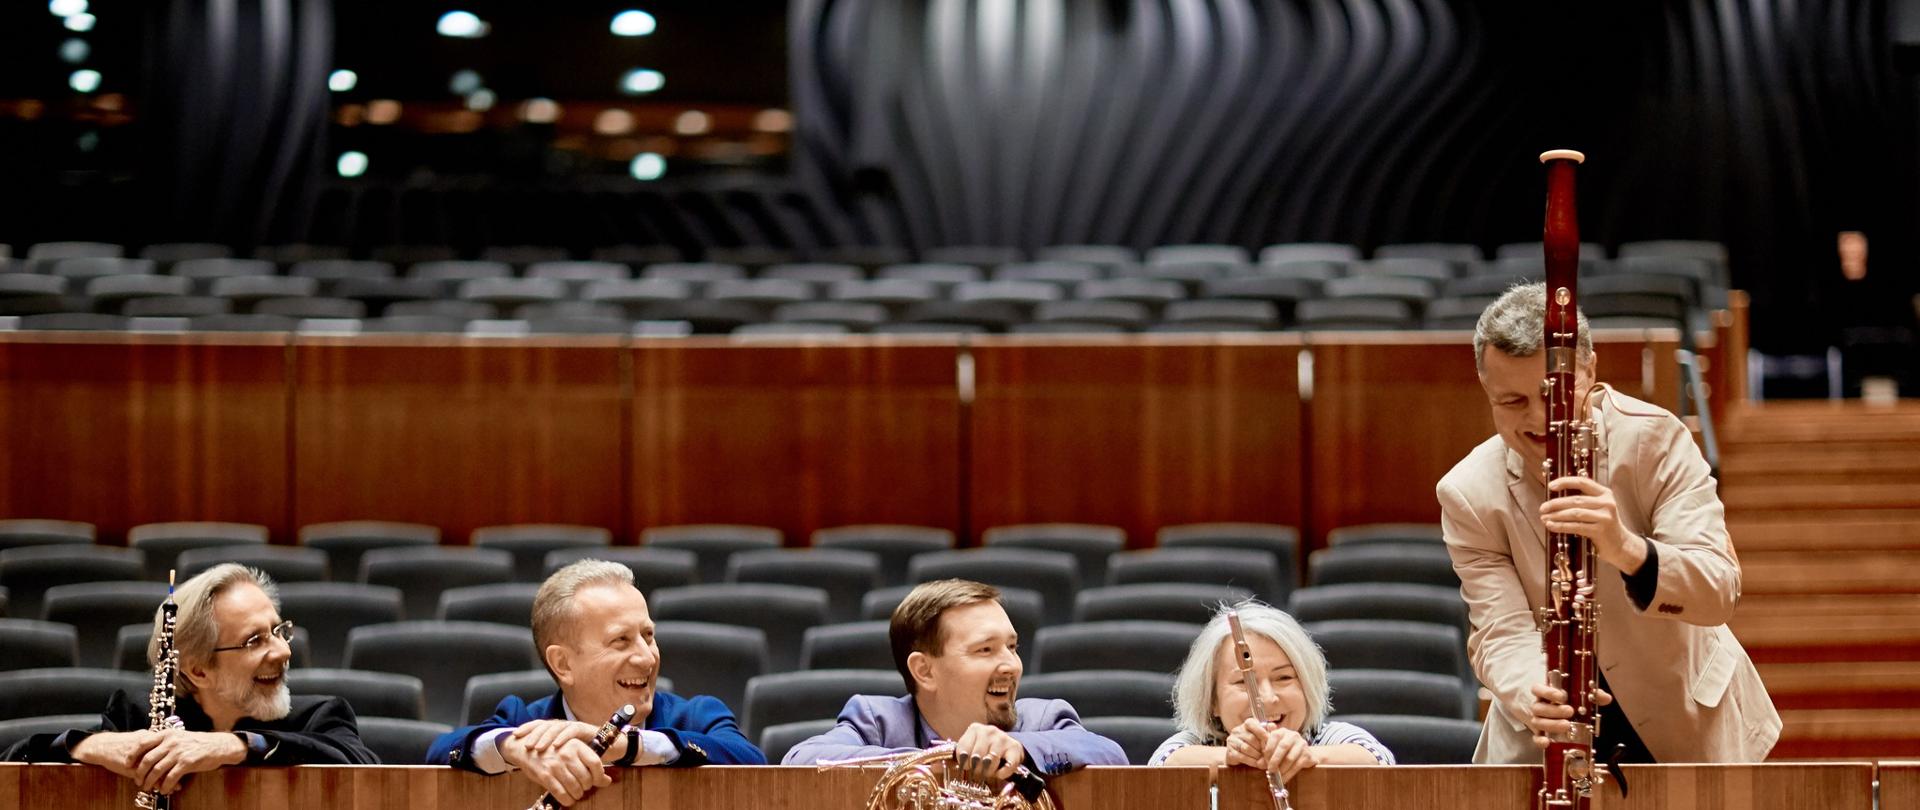 Kolorowe zdjęcie sali koncertowej - część z krzesłami dla publiczności, na środkowych miejscach zasiadają uśmiechnięci członkowie Krakowskiego Kwintetu Dętego, oparci o drewnianą balustradę i prezentujący na niej instrumenty, na których grają.